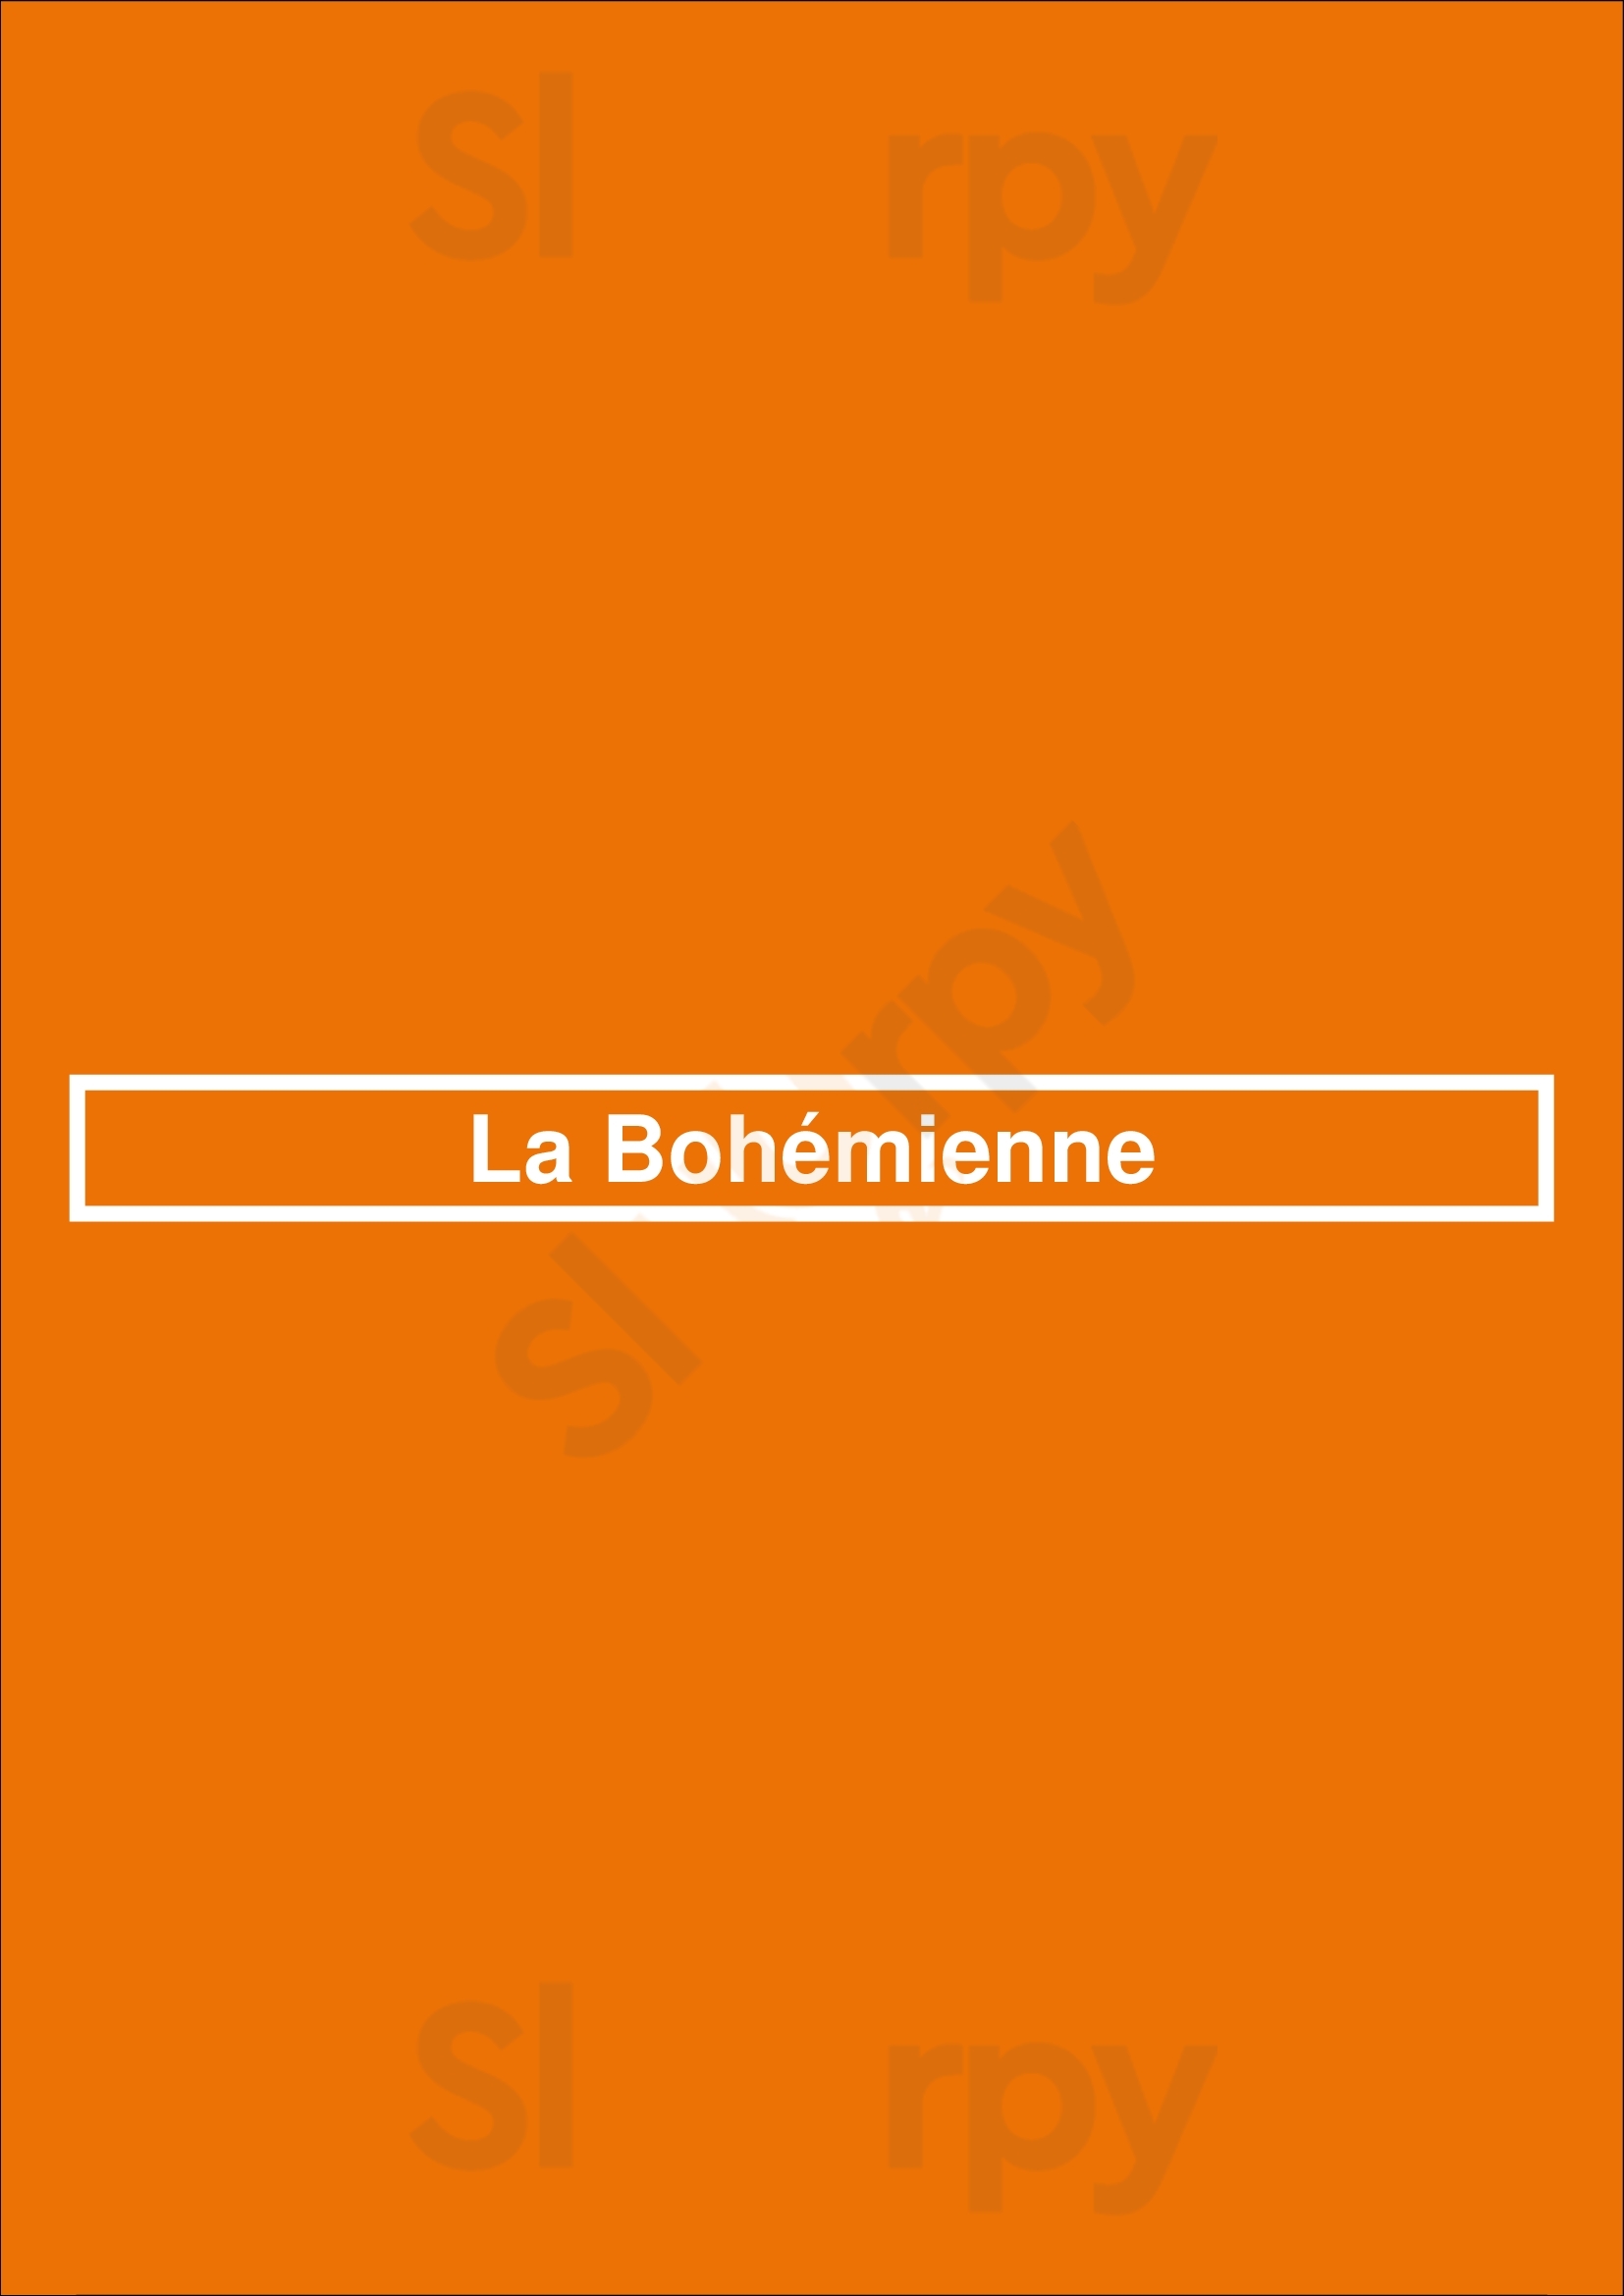 La Bohémienne Paris Menu - 1